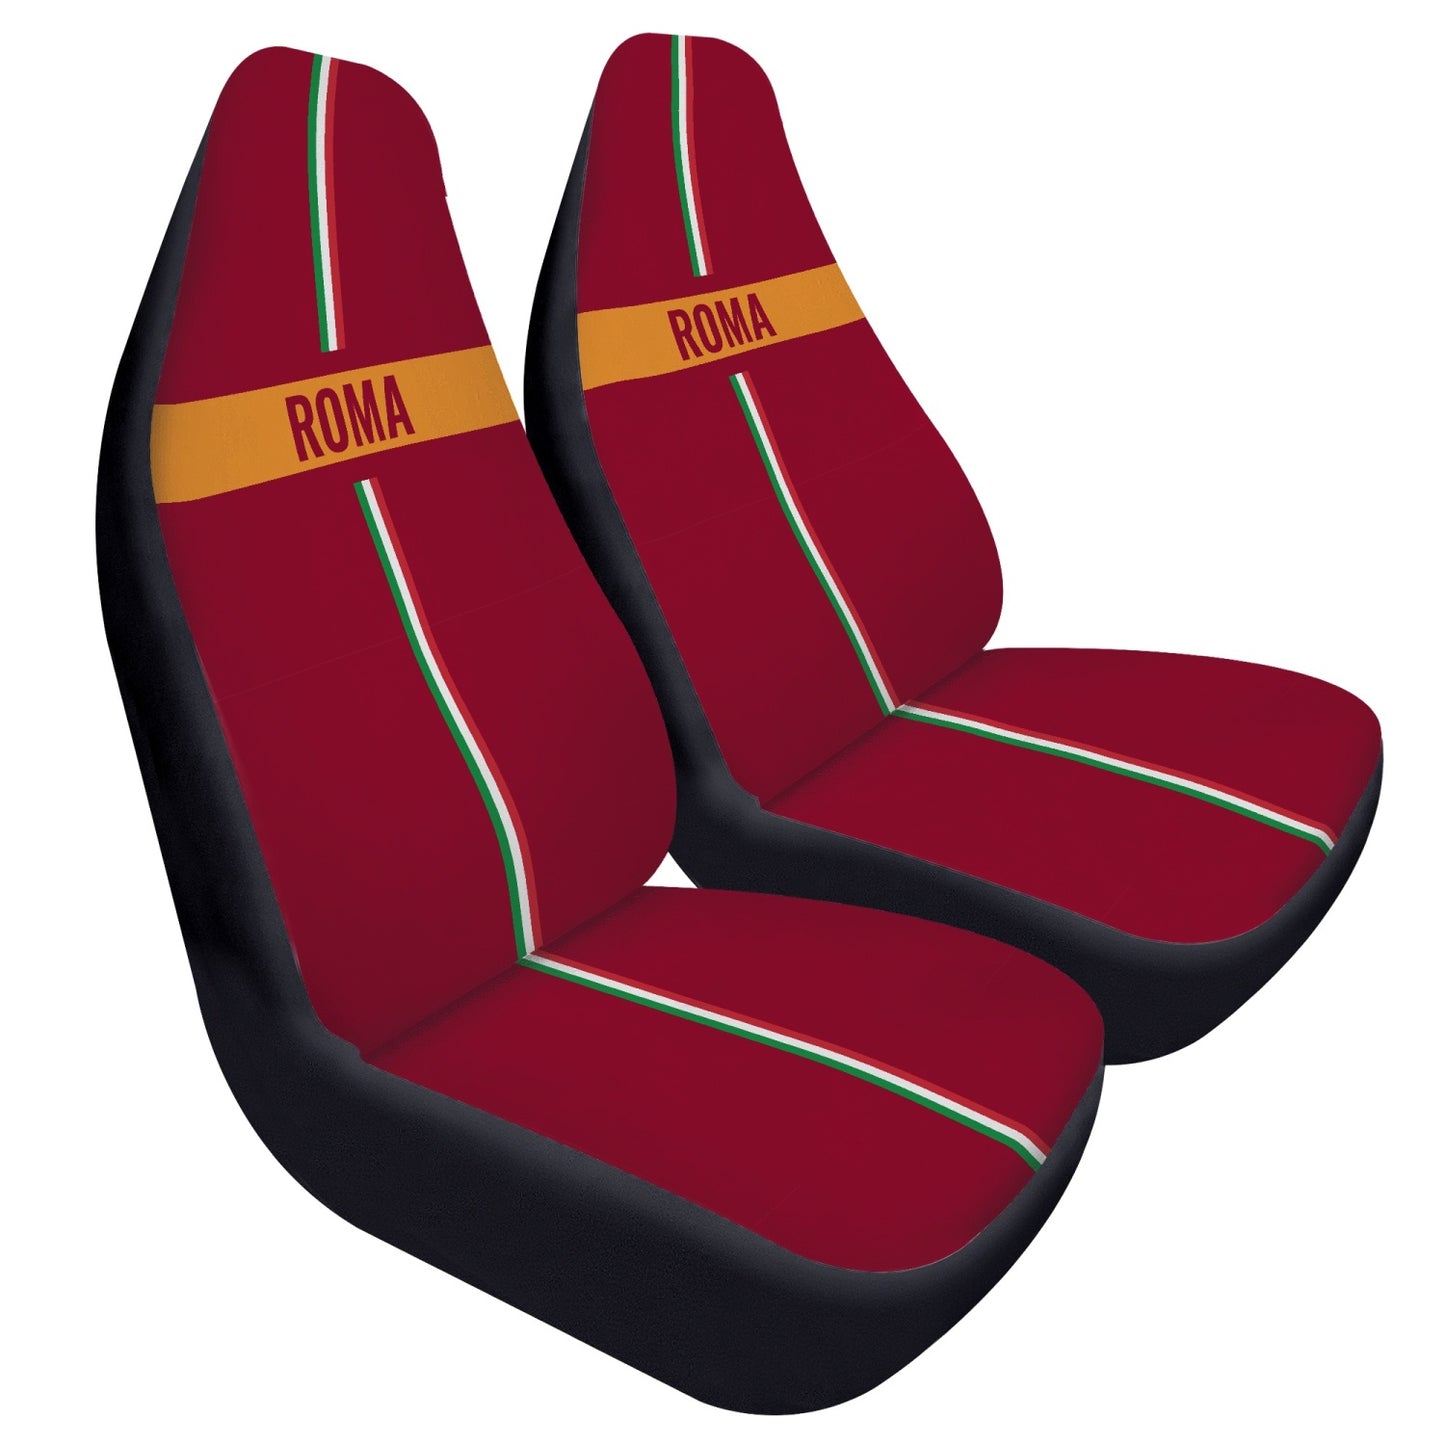 Roma Car Seats Cover 2Pcs